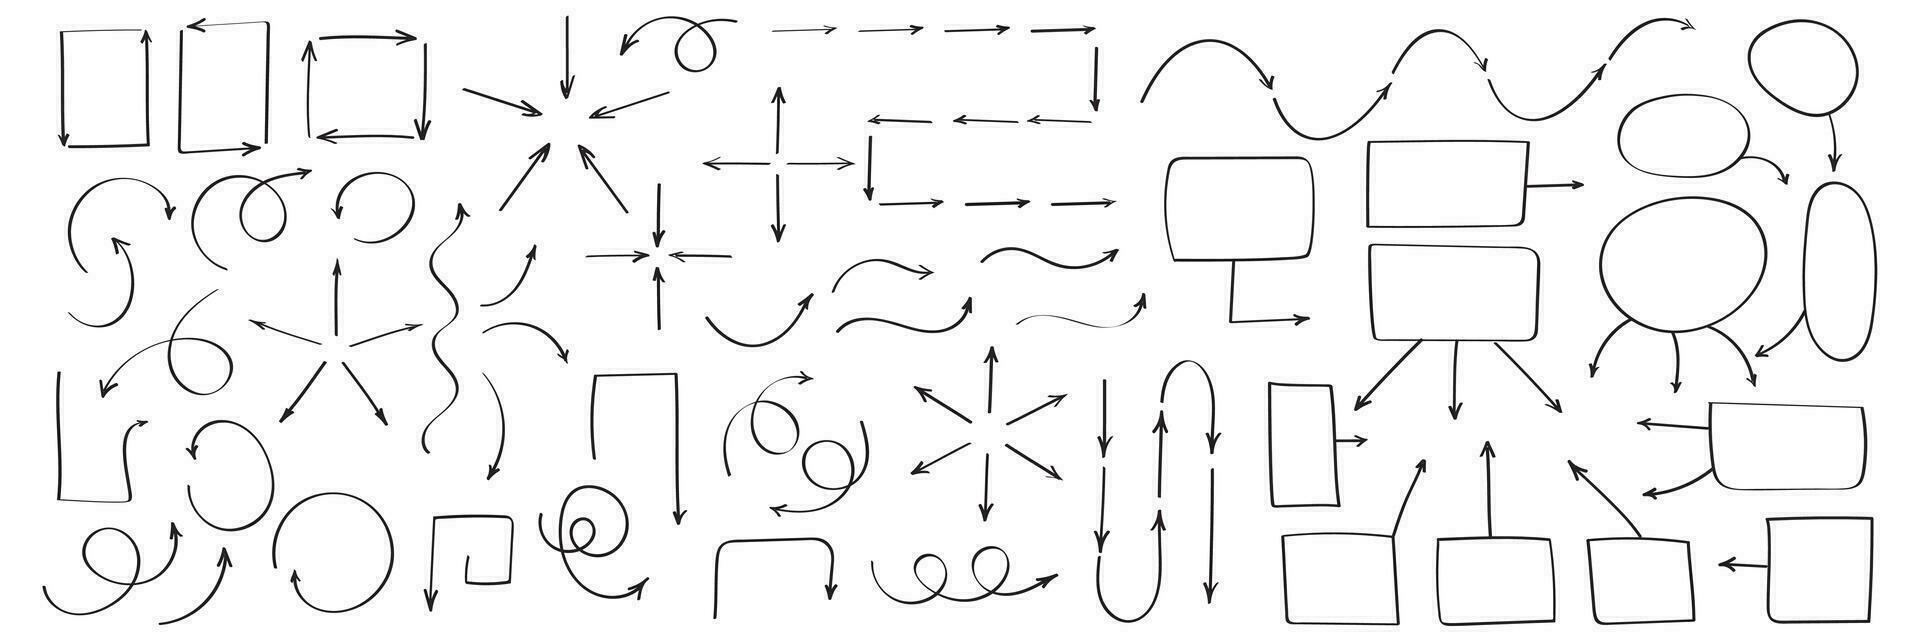 einstellen von Vektor Hand gezeichnet Pfeile und Flussdiagramm Elemente. Sammlung von Zeiger und Rahmen.